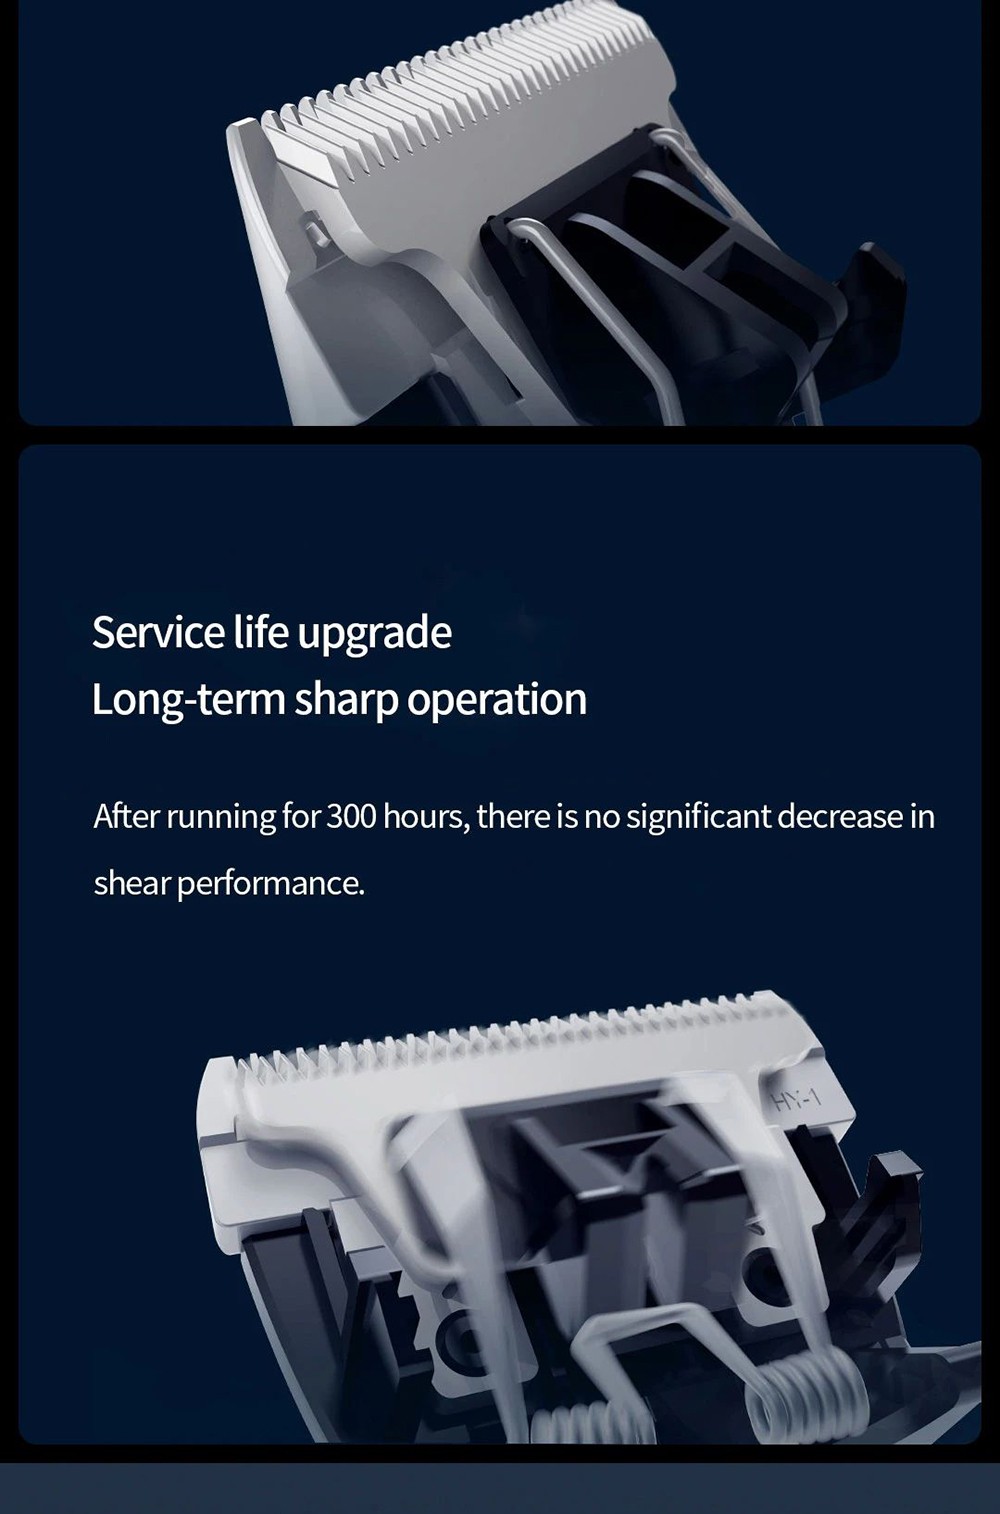 Xiaomi Mijia elektrisk hårklippare 0.5-1.7 mm trimning av kort hår lPX7 Vattentät 180 min uthållighet